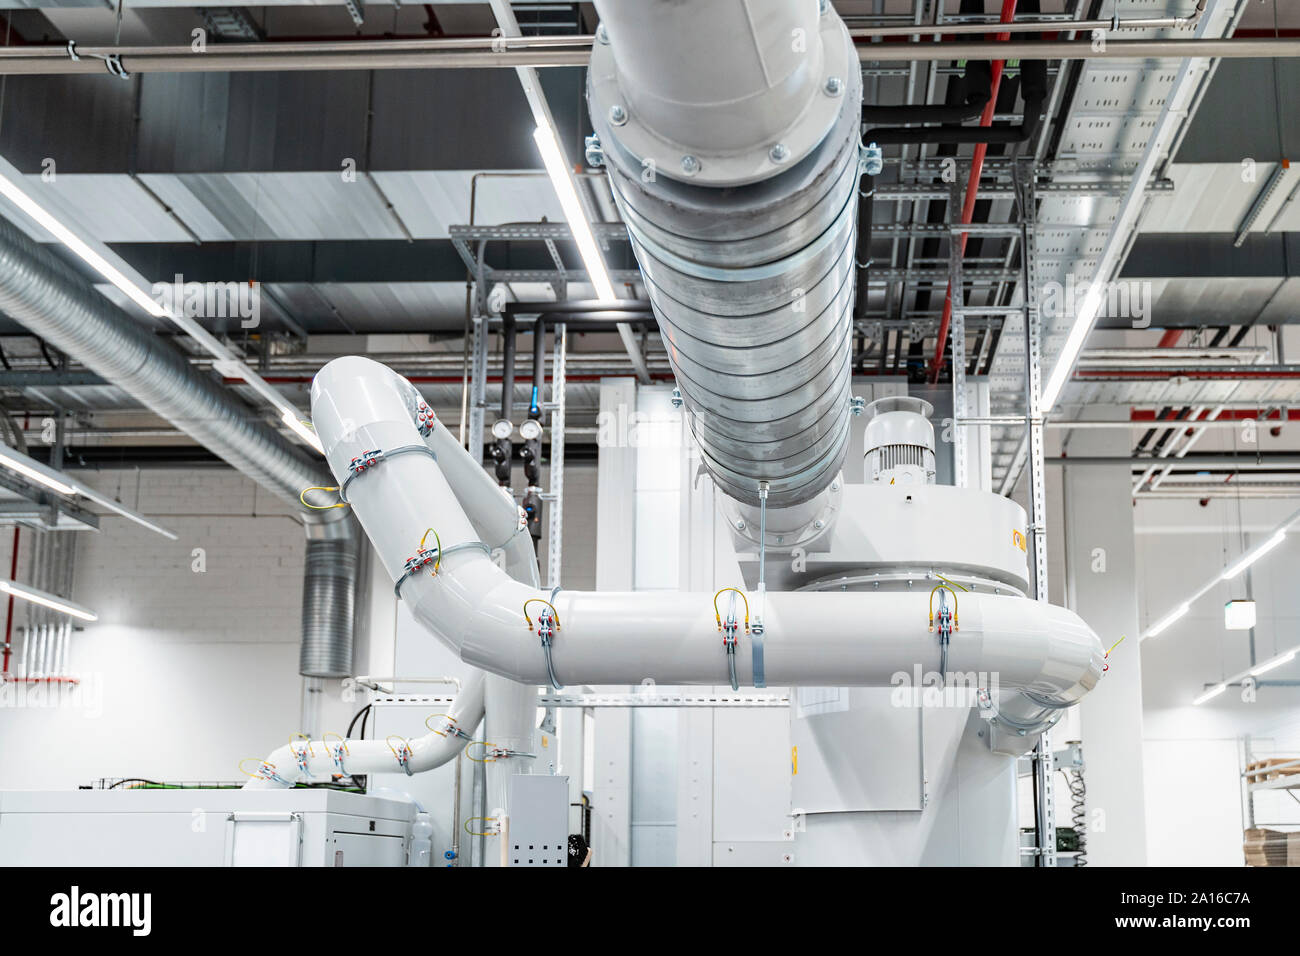 Pipeline inside modern factory, Stuttgart, Germany Stock Photo